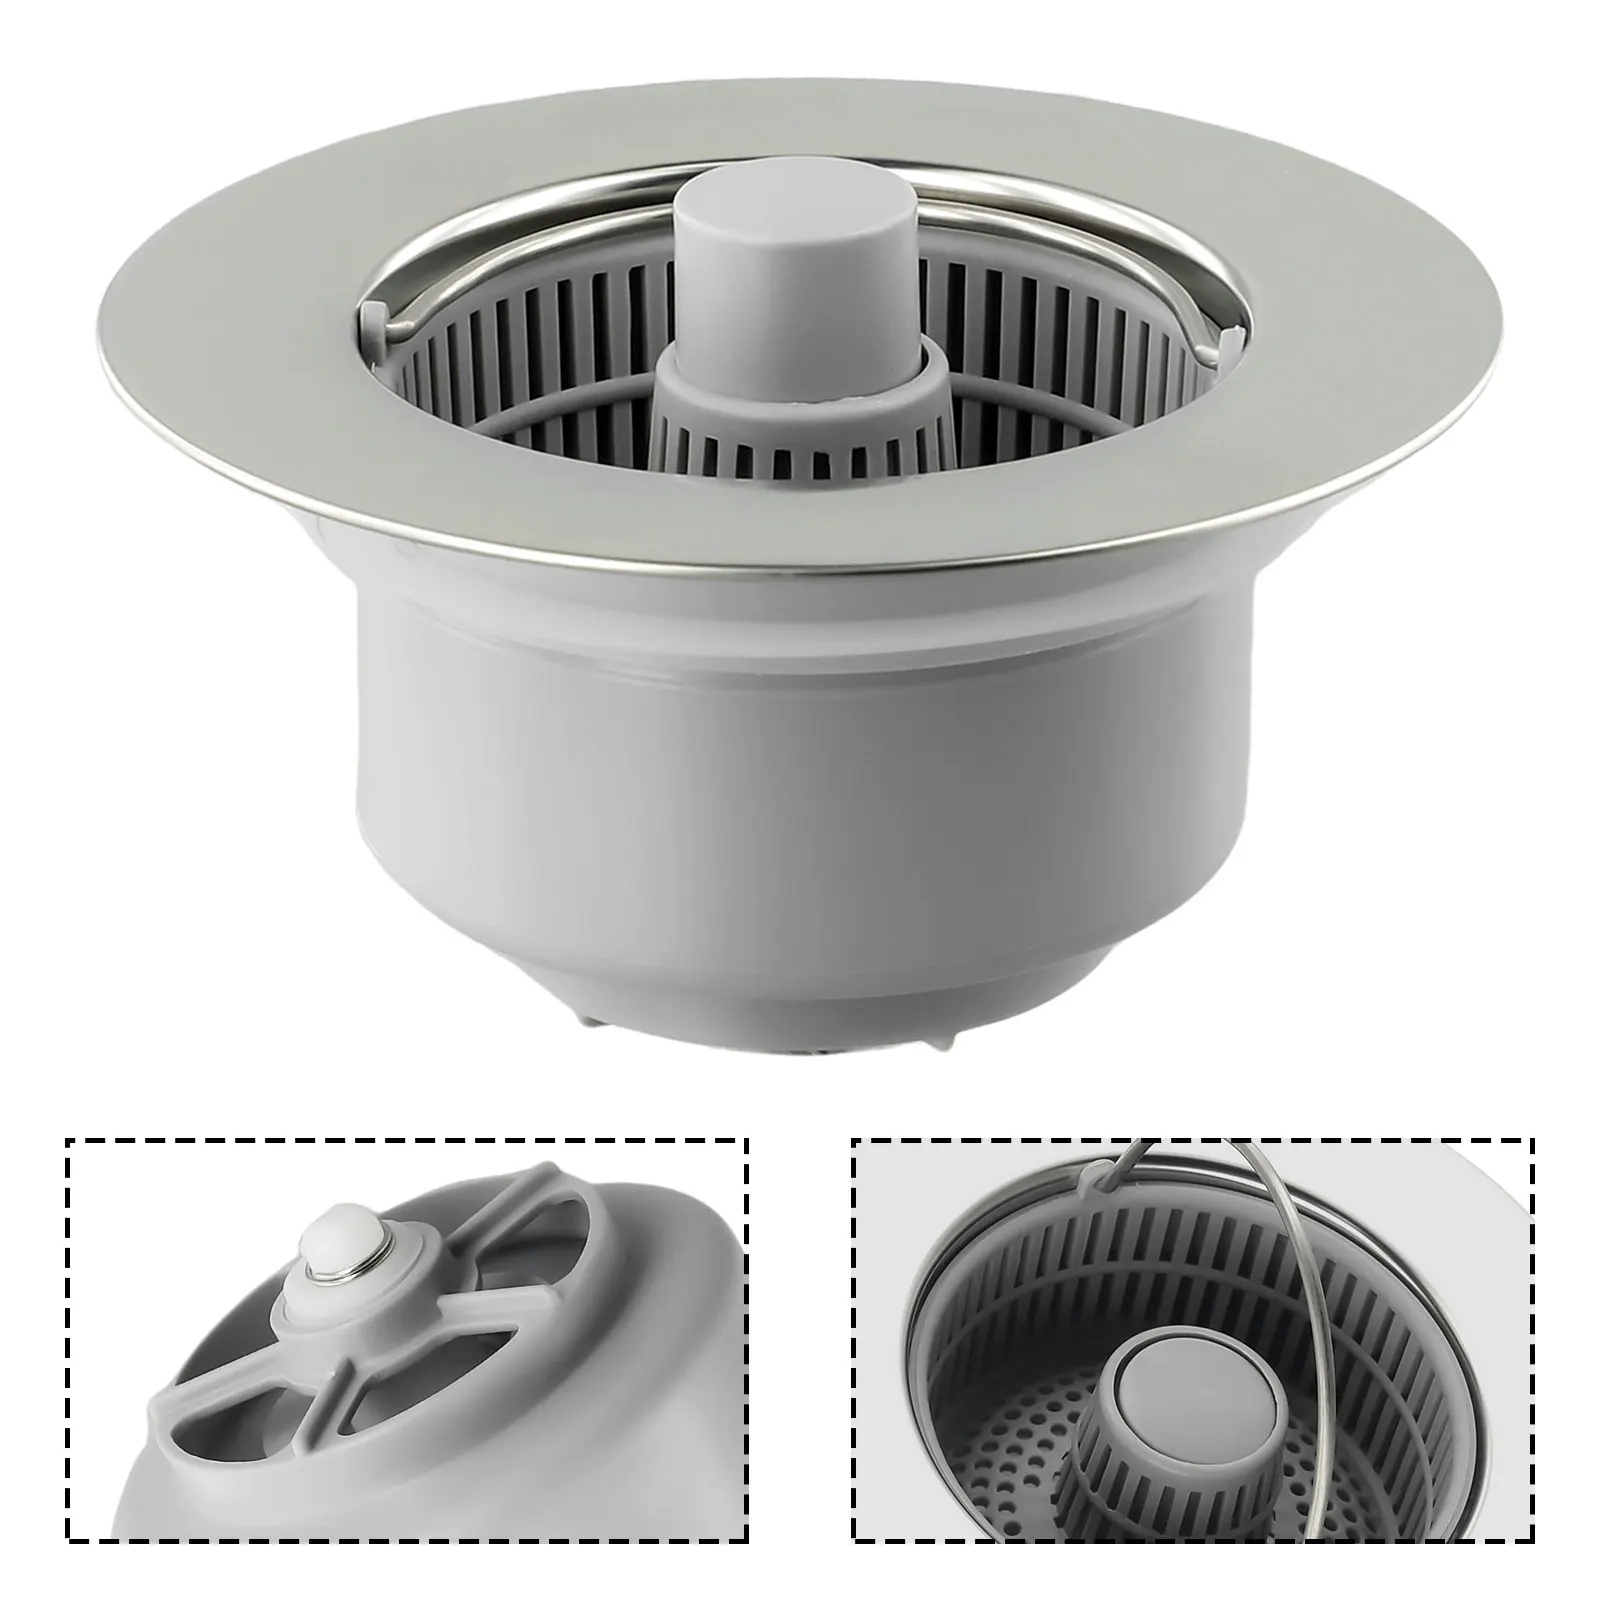 

Универсальный сливной фильтр для кухонной раковины 3 в 1, фильтр из нержавеющей стали, легко установить и использовать для эффективного слива